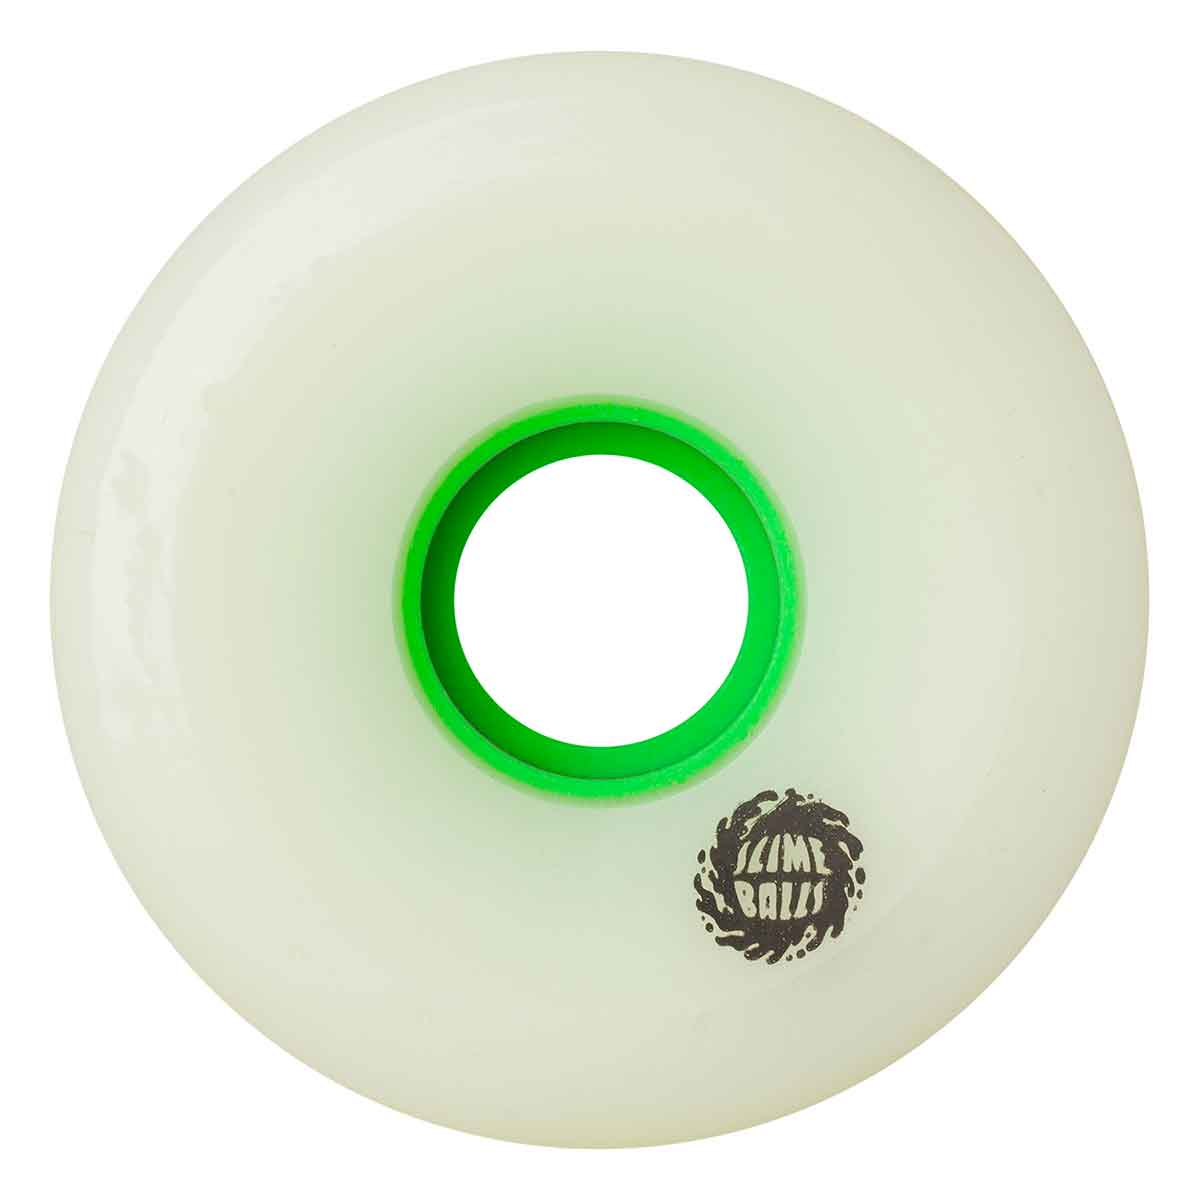 Slime Balls OG Slime 66mm 78a Blue & Green Skateboard Wheels